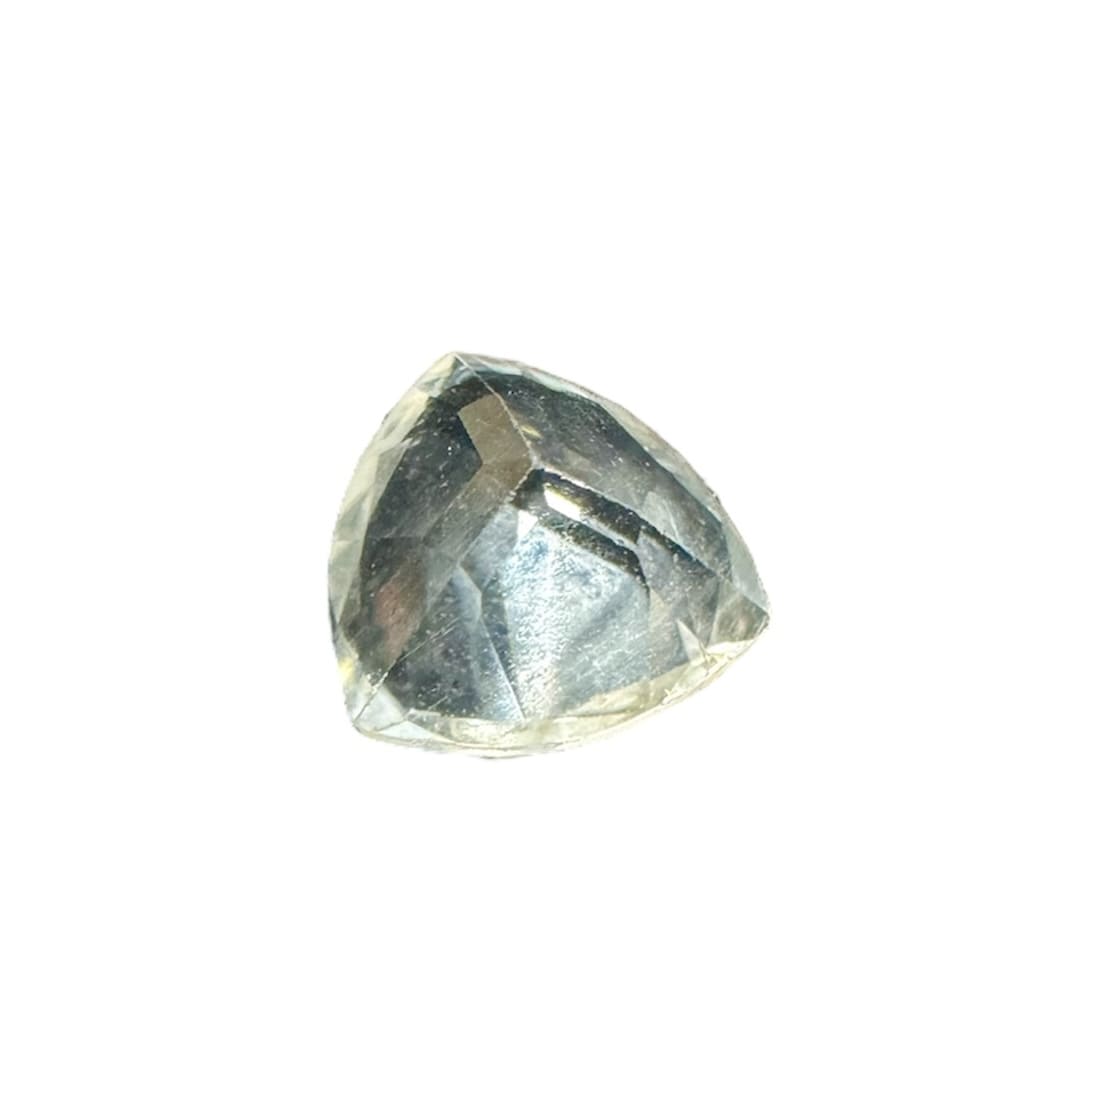 goshénite pierre gemme béryl incolore taille trillion